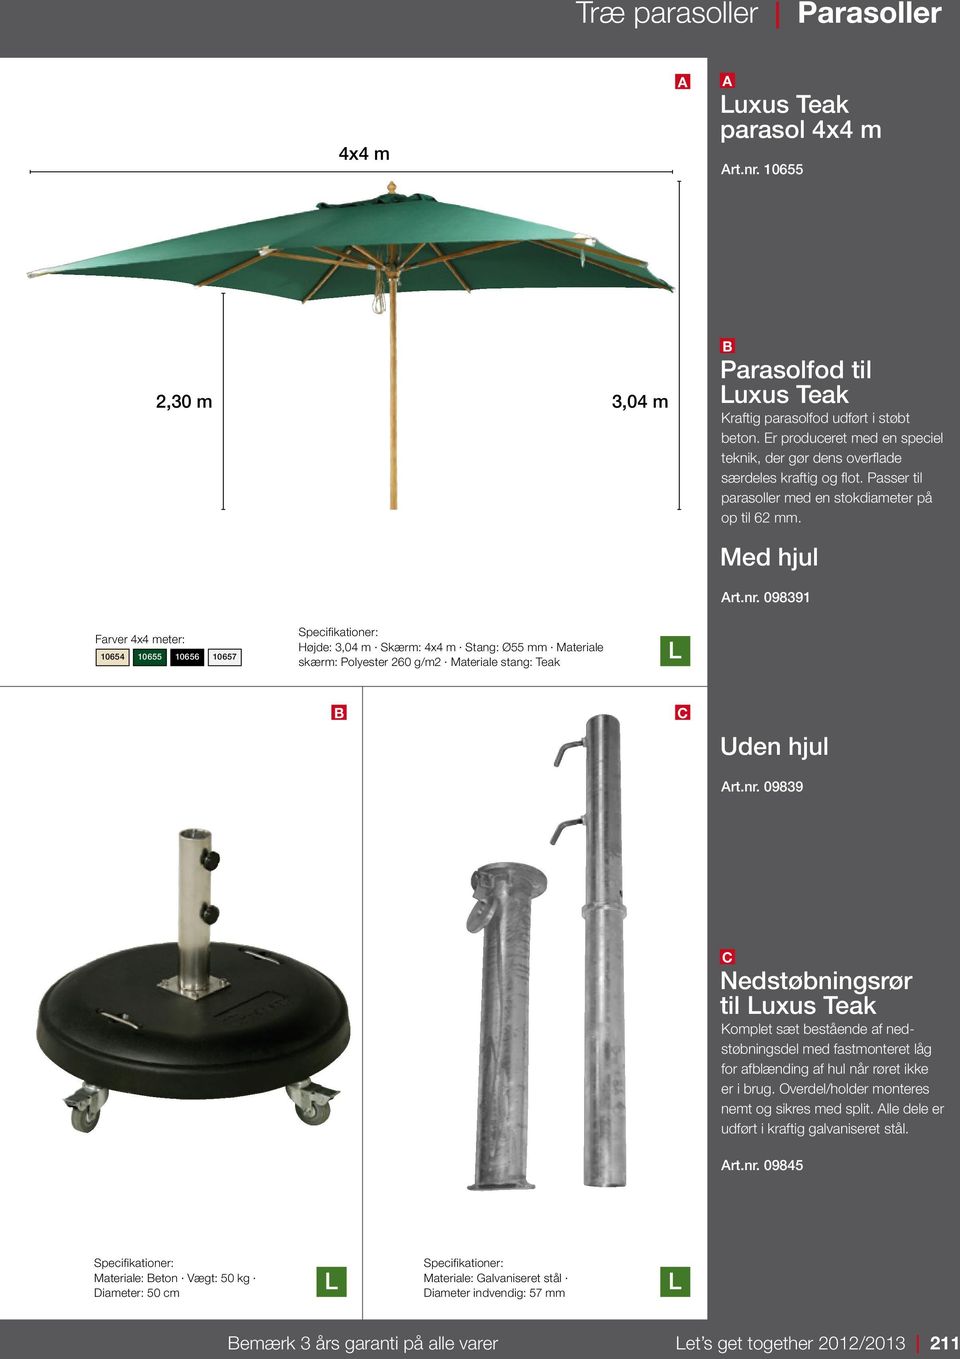 Passer til parasoller med en stokdiameter på op til 62 mm. Med hjul rt.nr.